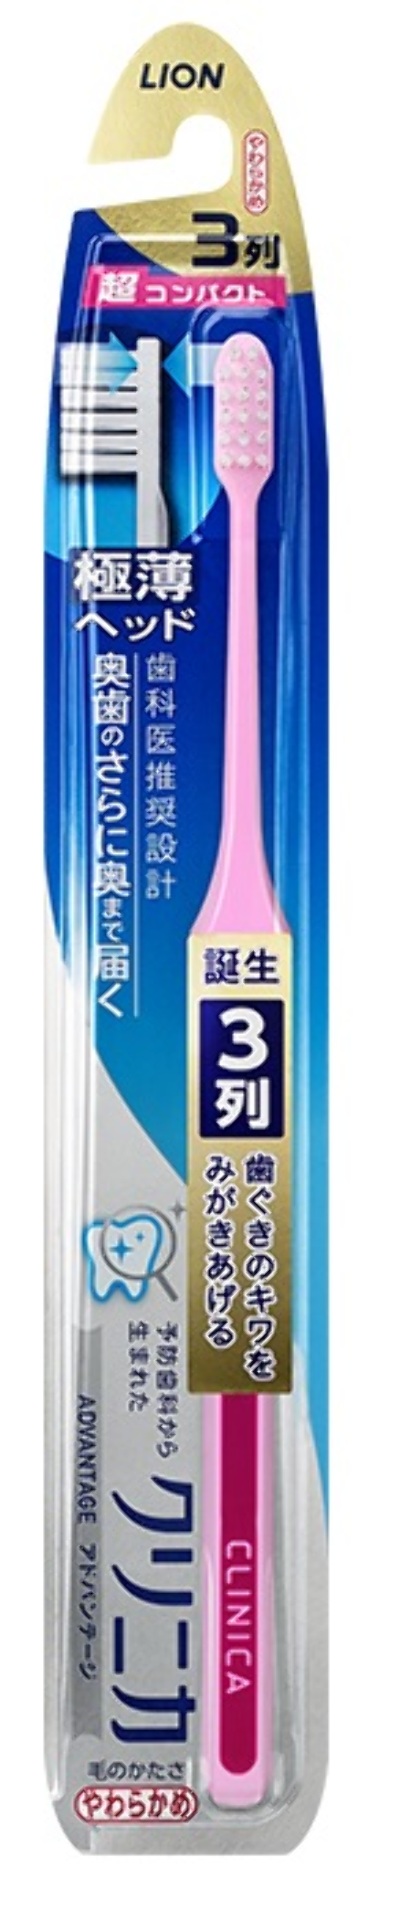 Компактная 3-х рядная зубная щетка с плоским срезом, тонкой ручкой "ClinicaAdvantage" (Средняя жесткость), LION, 1 шт, Япония